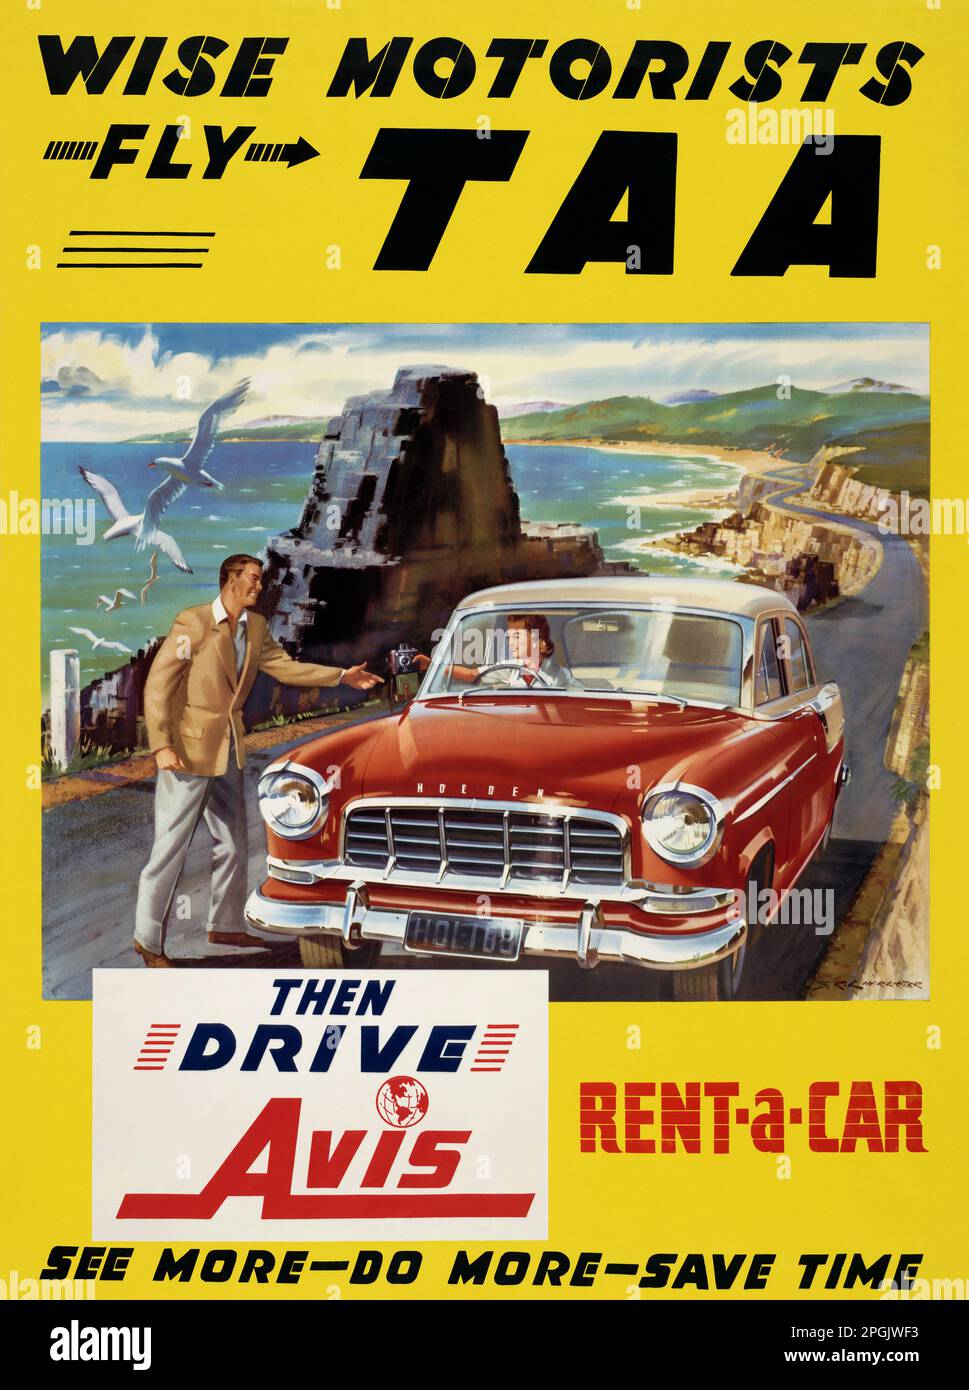 WISE Motoristes Fly TAA. Ensuite, prenez Avis Rent-a-car par Barrie R. Linklater (1931-2017). Affiche publiée en 1950s en Australie. Banque D'Images